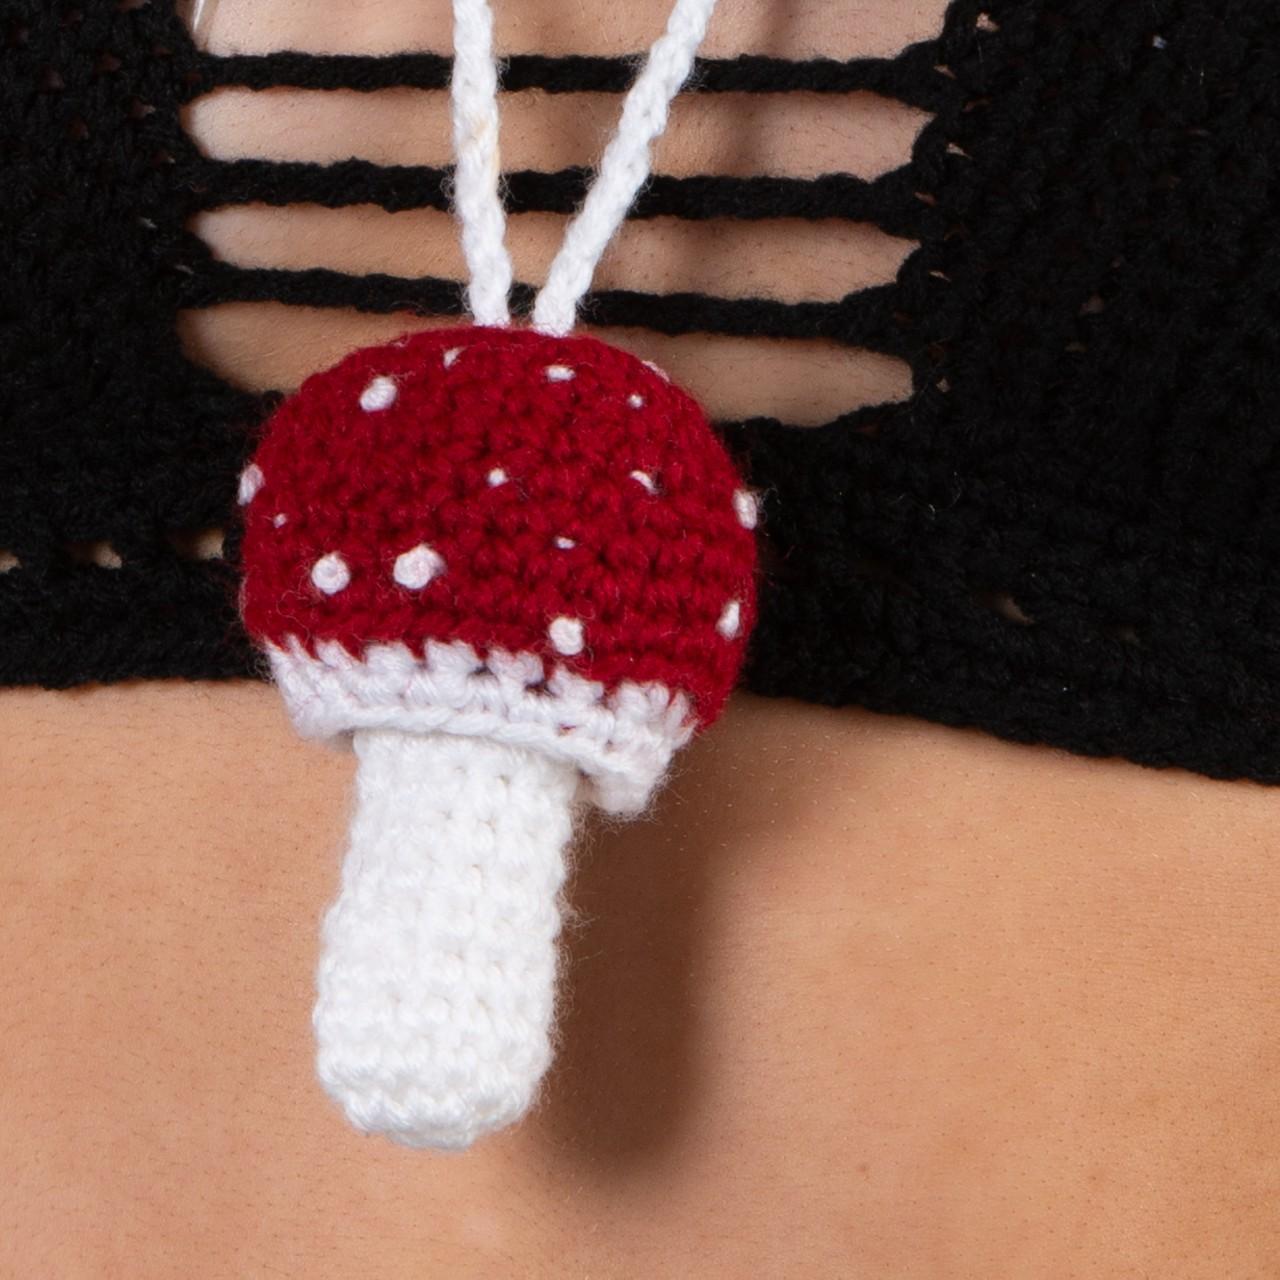 Product Image 3 - Magic mushroom stash necklace /